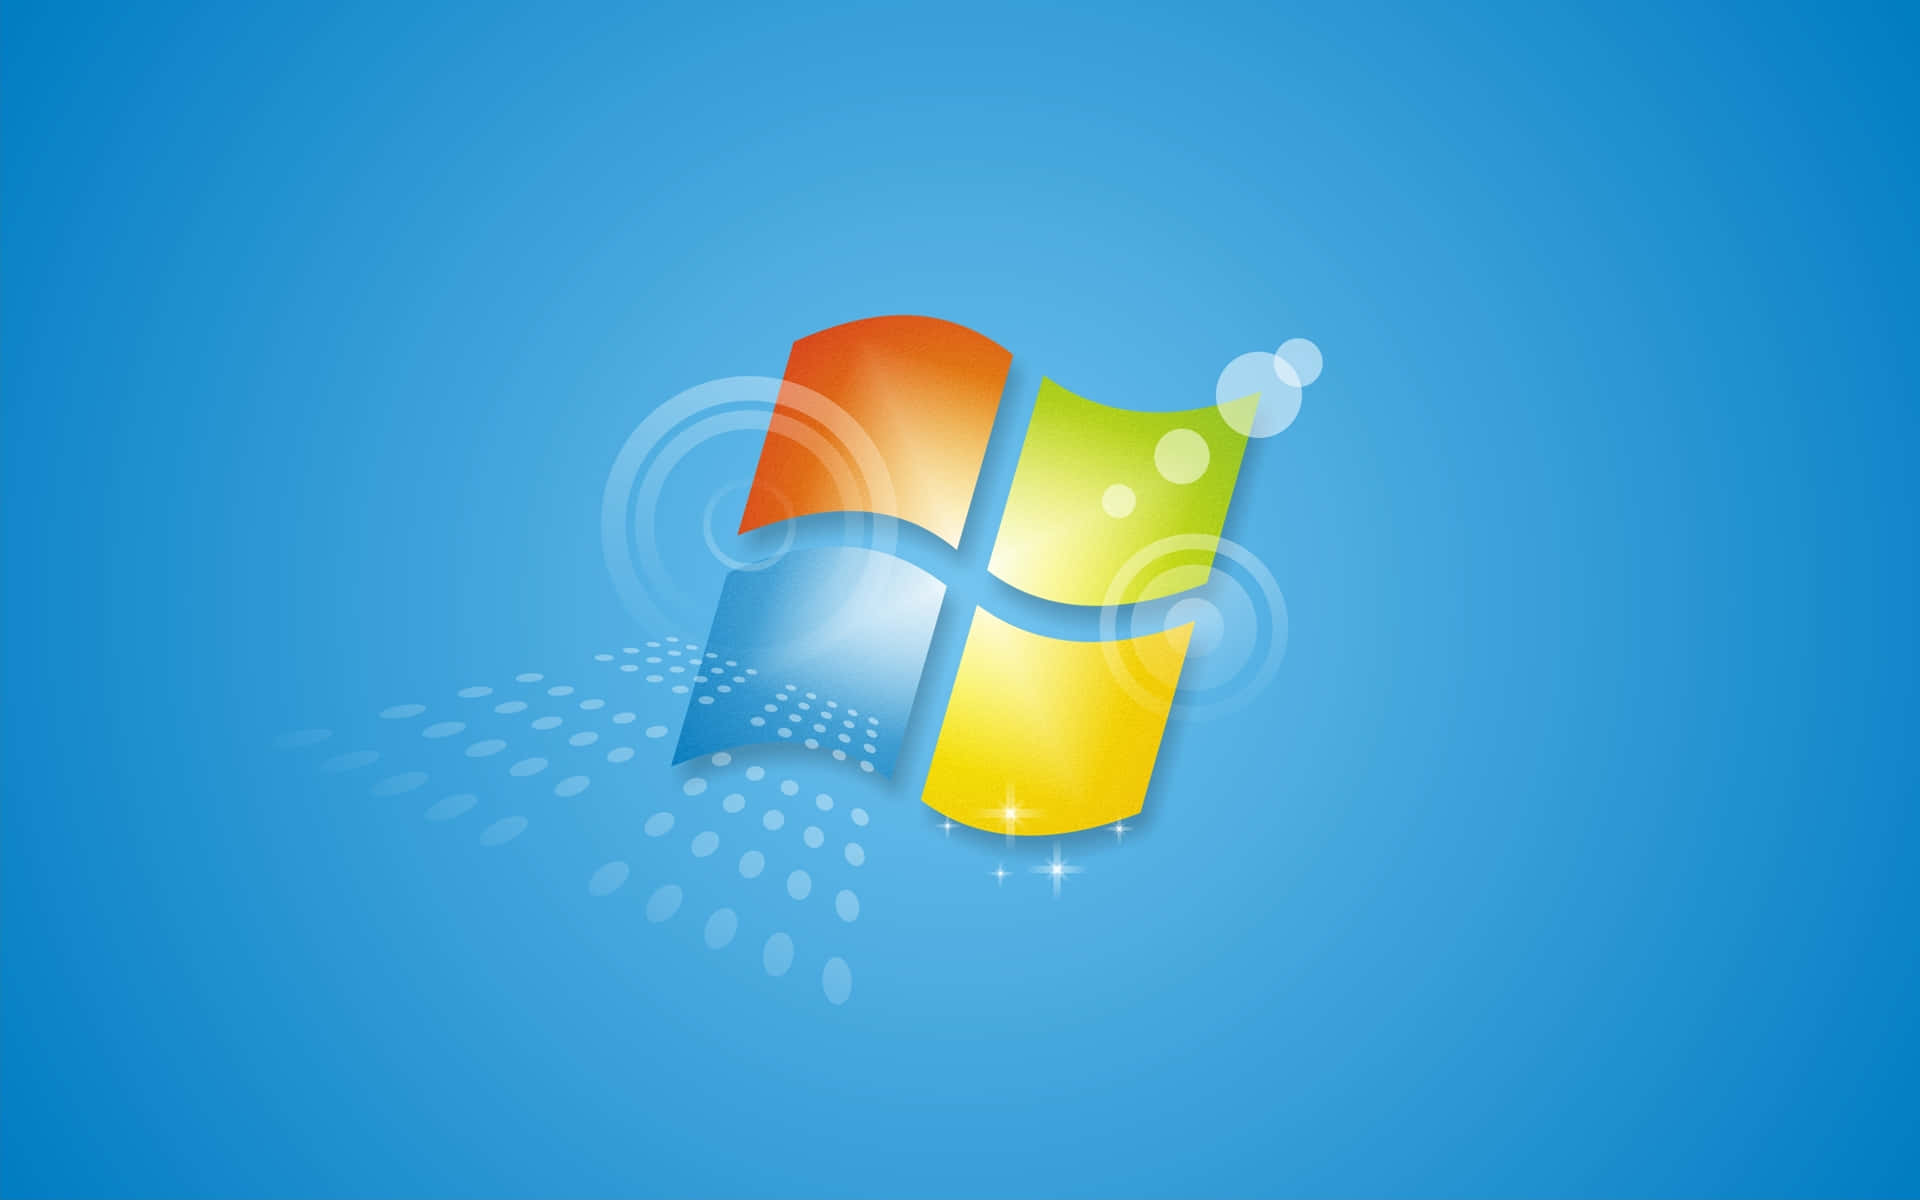 Microsoft Windows 7 Logo Tapet: Se et klart 3-D Microsoft Windows 7 logo på dette tapet.